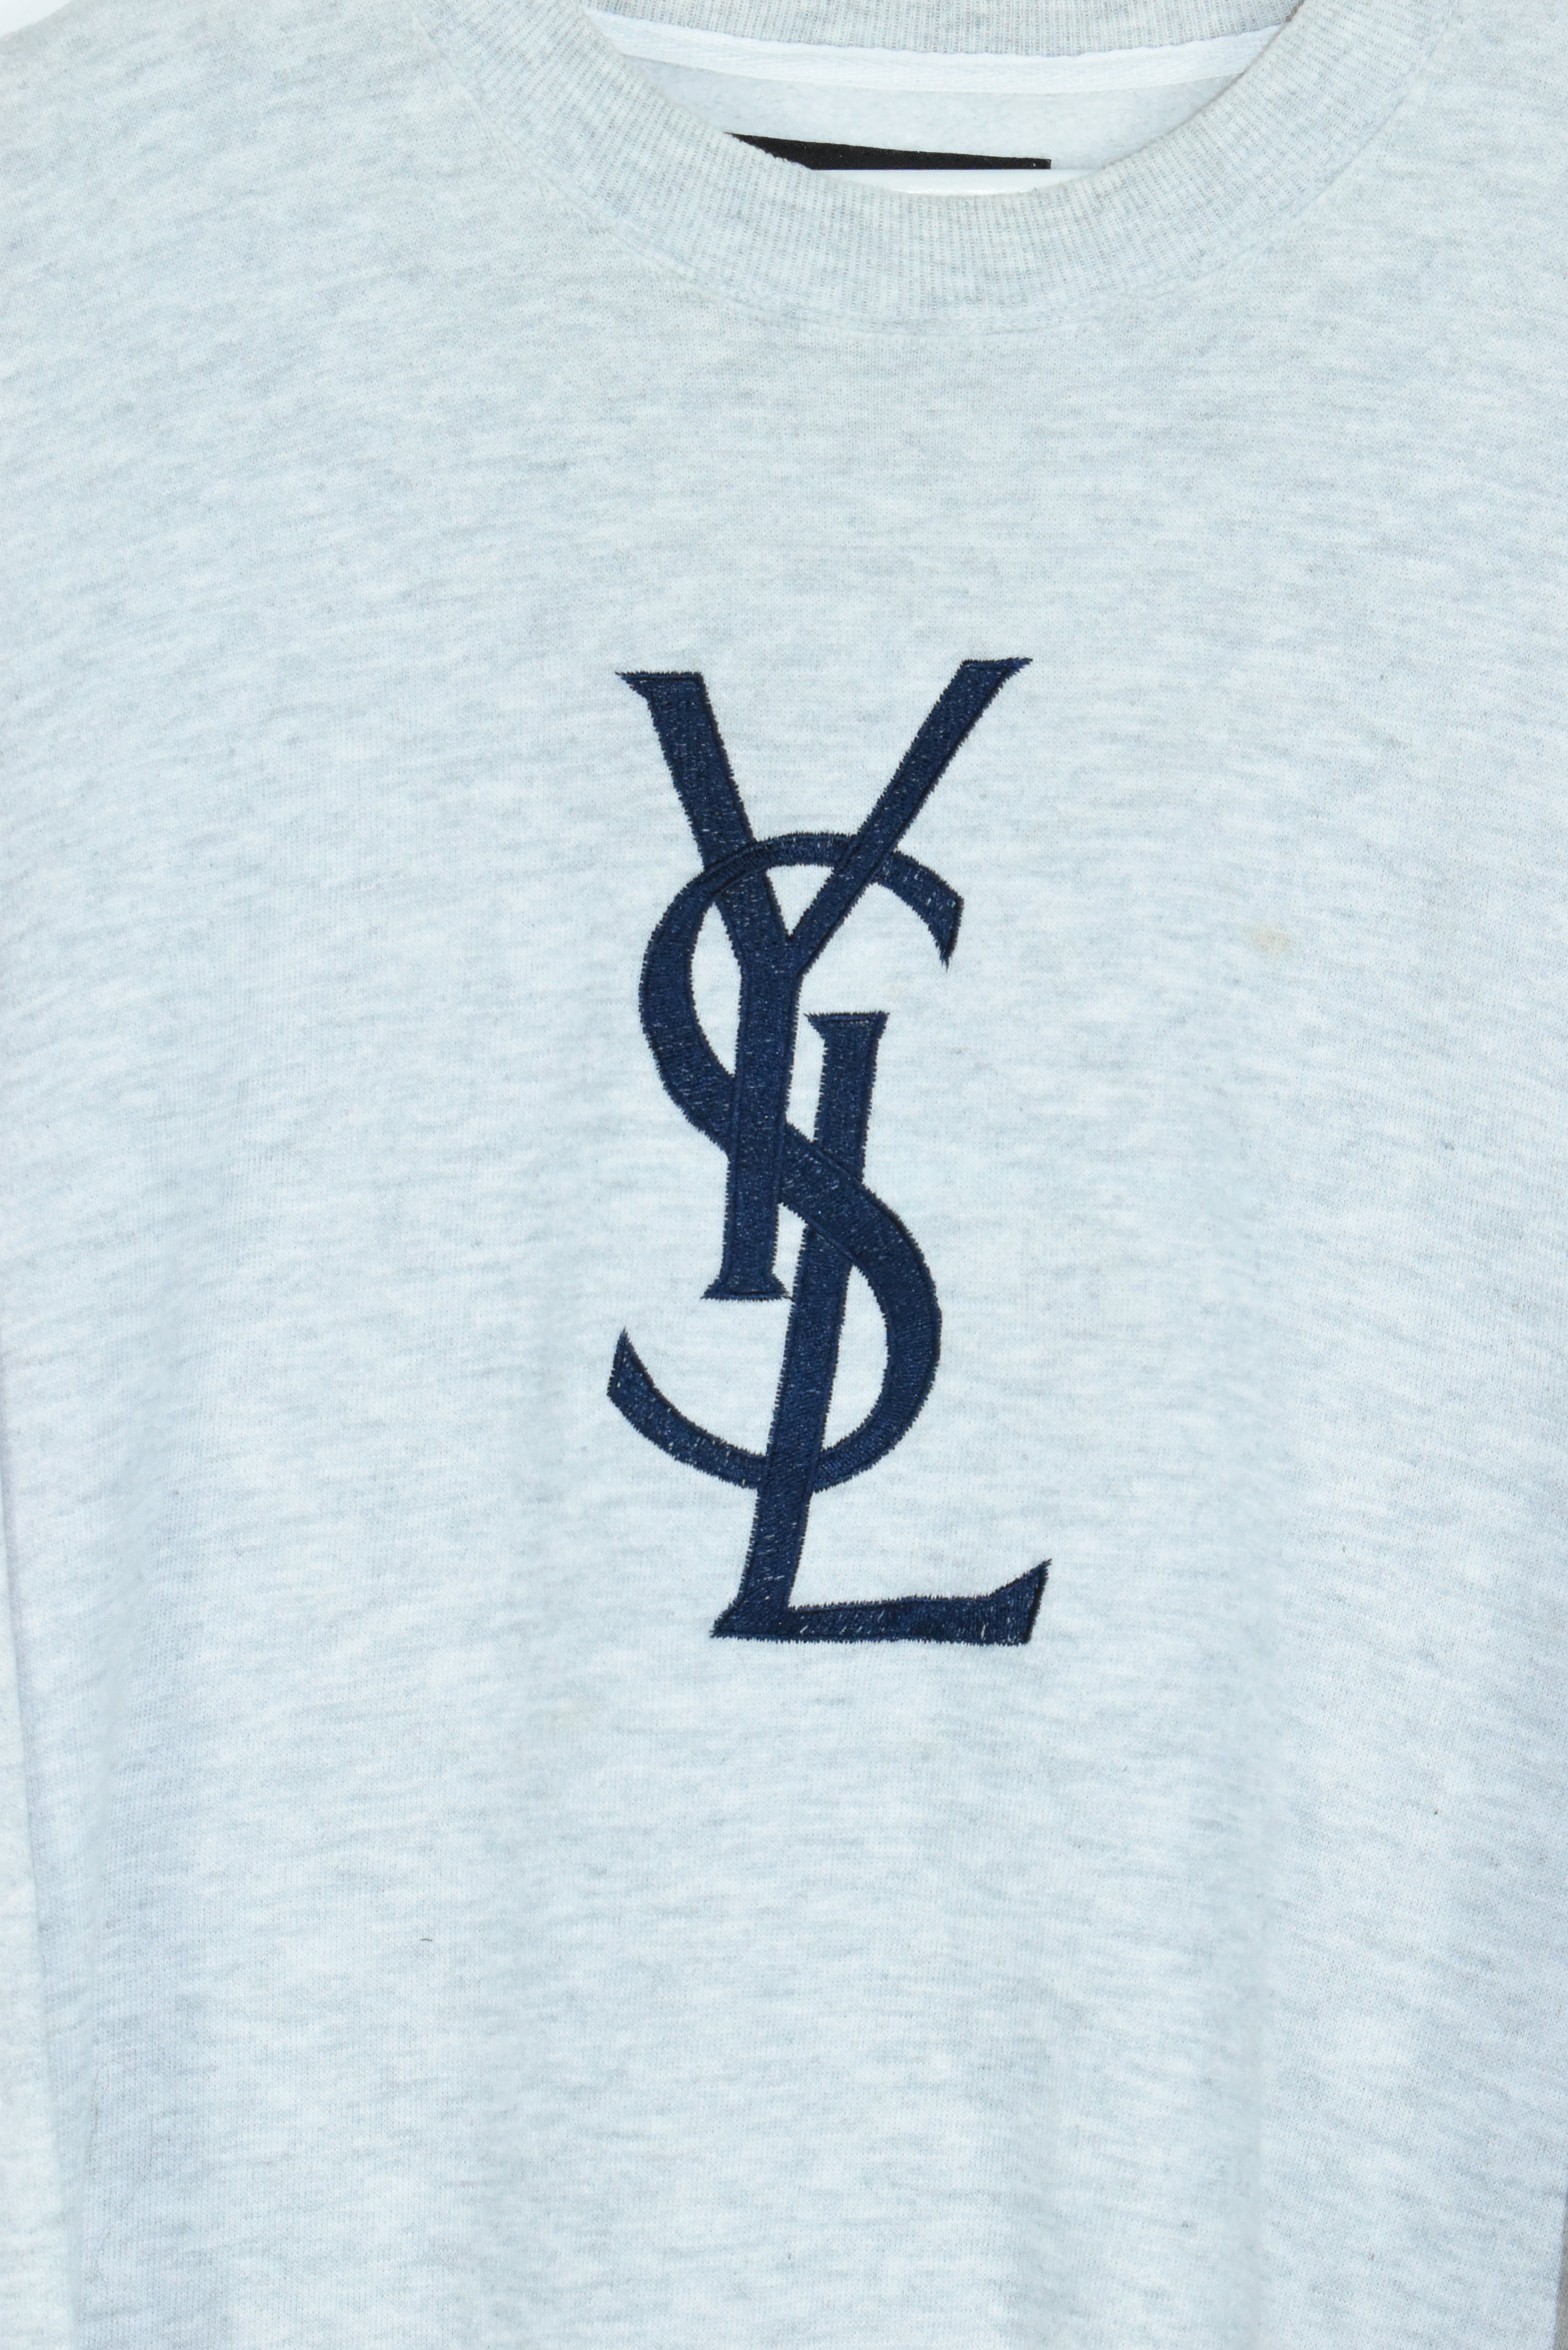 Vintage YSL Embroidery Bootleg Sweatshirt XLARGE